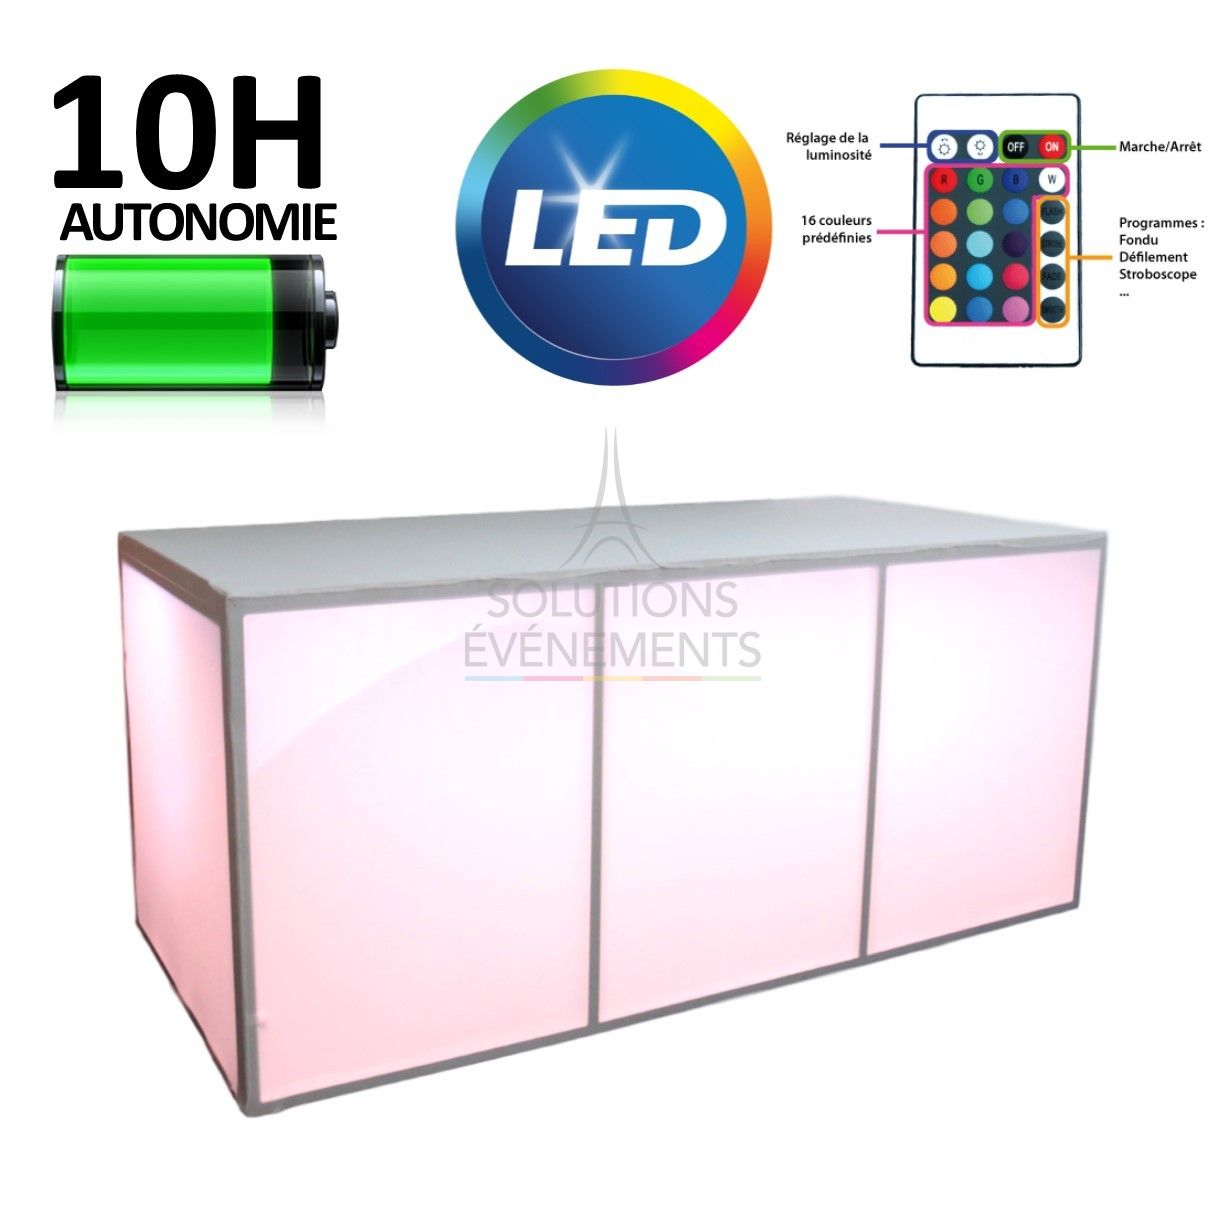 LED illuminated folding sideboard rental